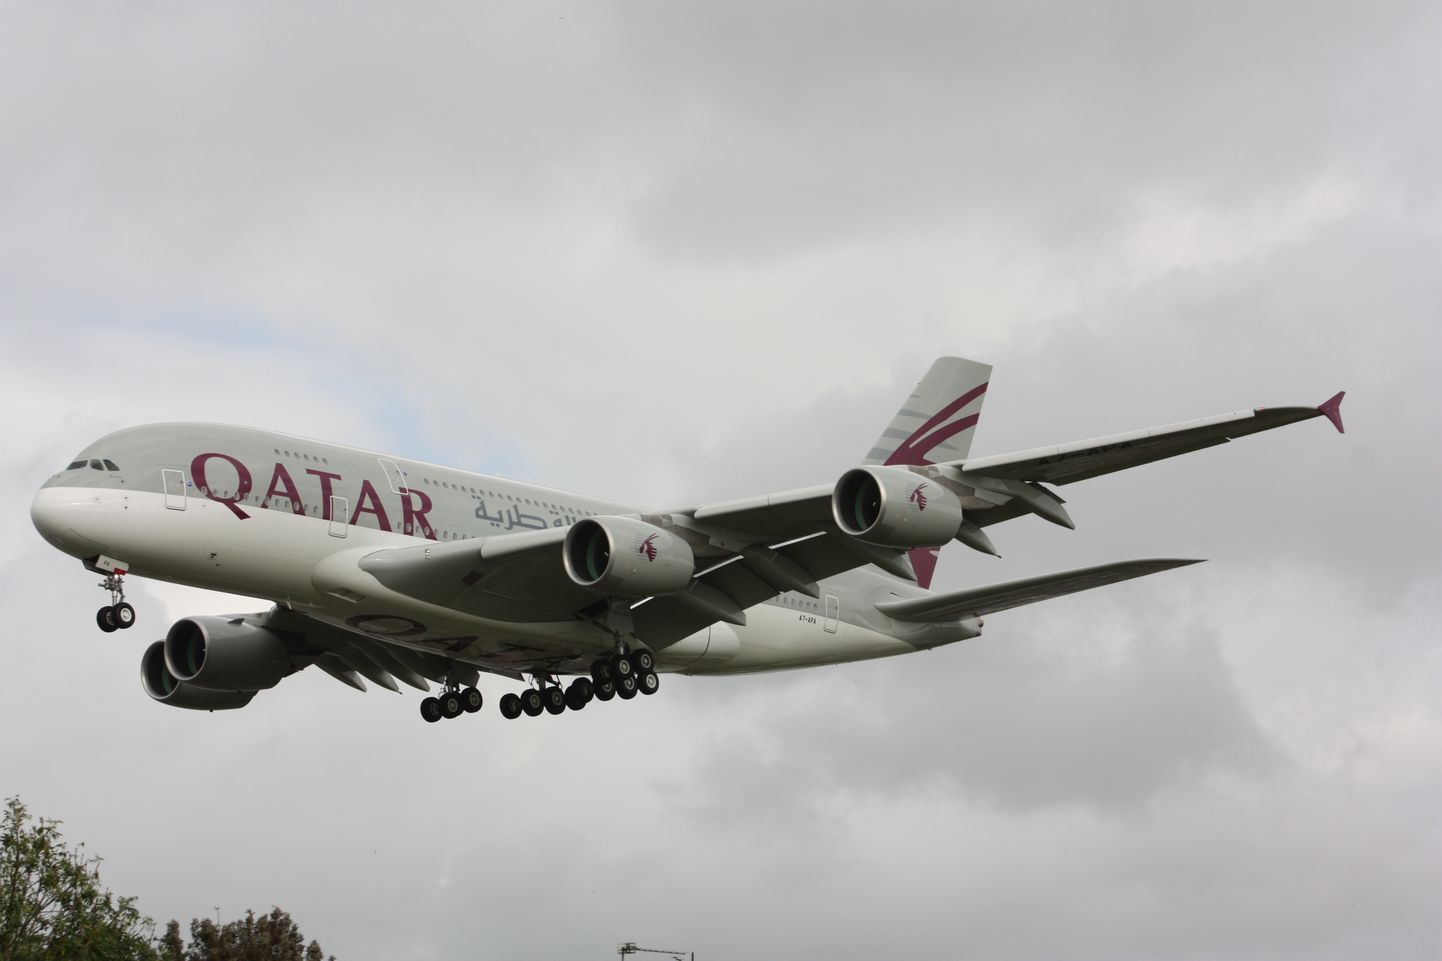 Tillukese maa kohta on Qatar Airways väga suur ja edukas lennufirma. Tavaliselt pälvitakse kiitust ning ootamatu kriitika viis kompanii nüüd meeleheitlike sammudeni.